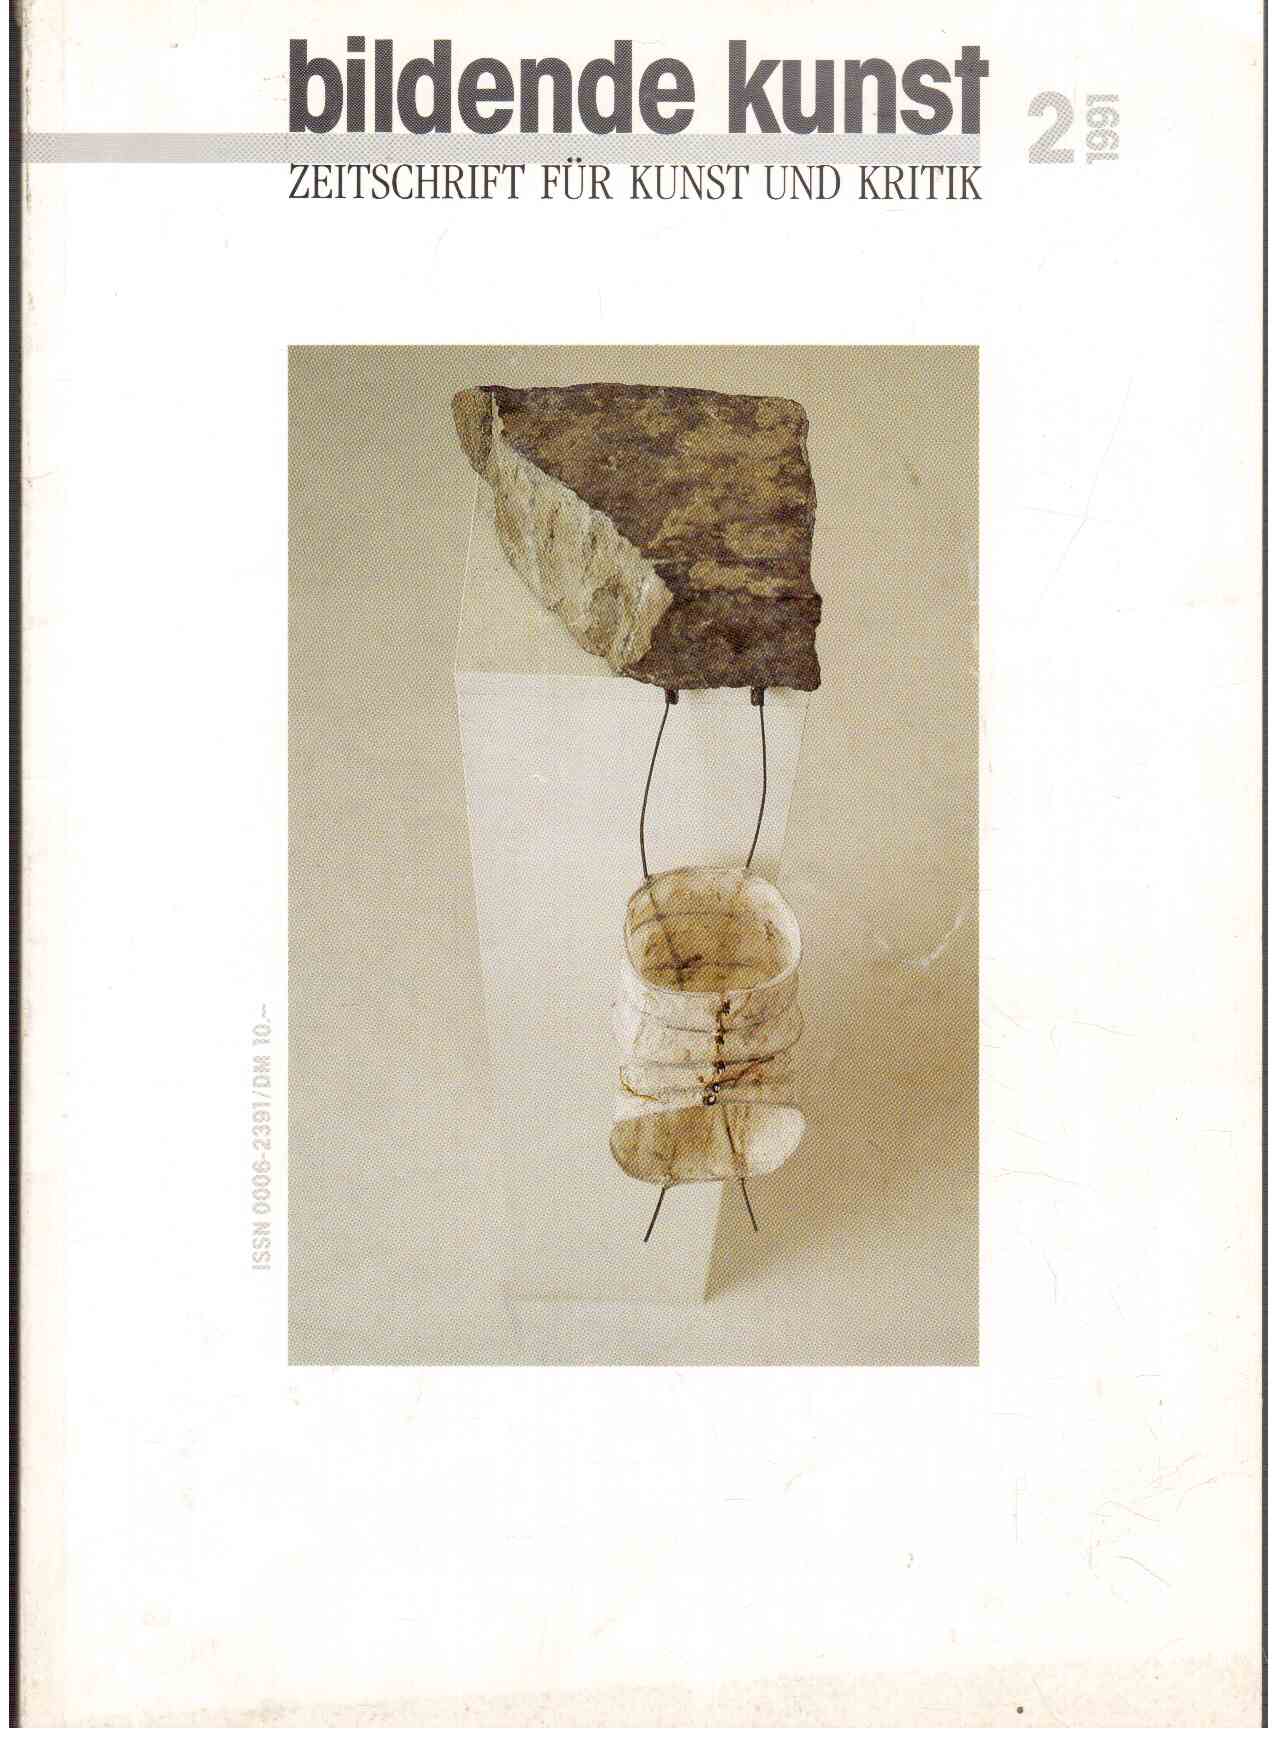 bildende kunst : Zeitschrift für Kunst und Kritik 2(1991)